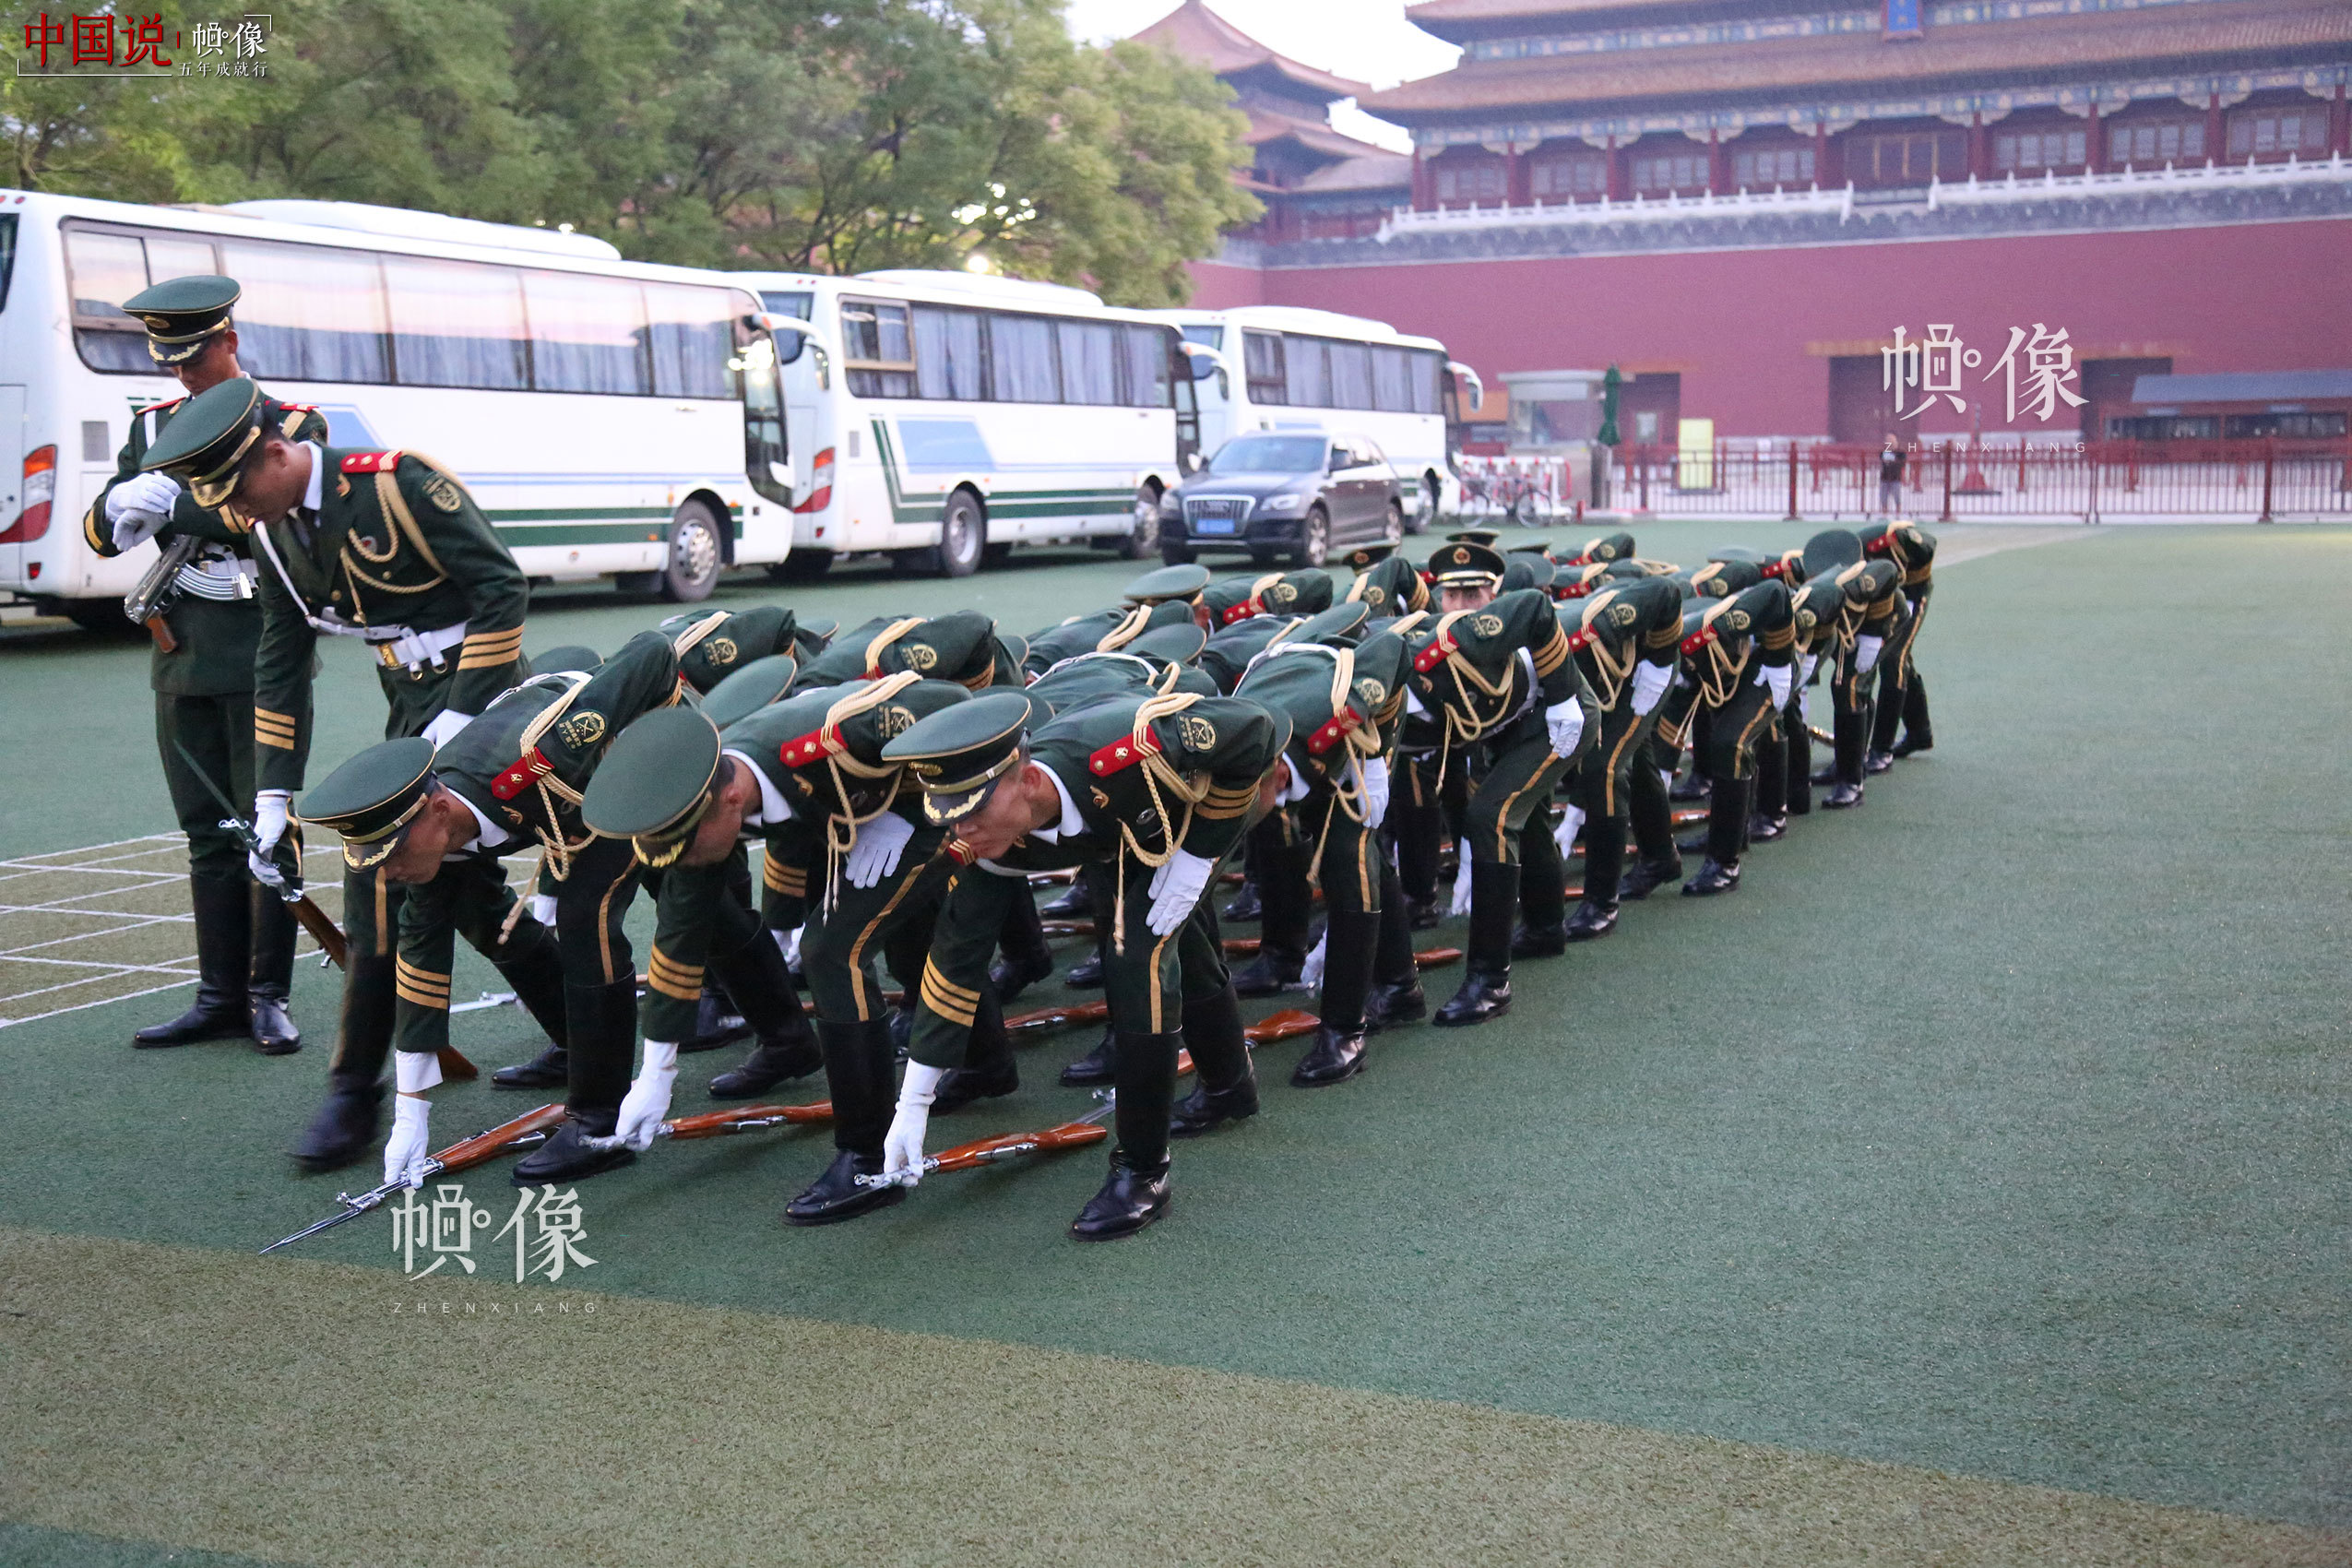 2017年7月28日，北京，国旗护卫队员在训练场做升旗前的准备。中国网记者 黄富友 摄